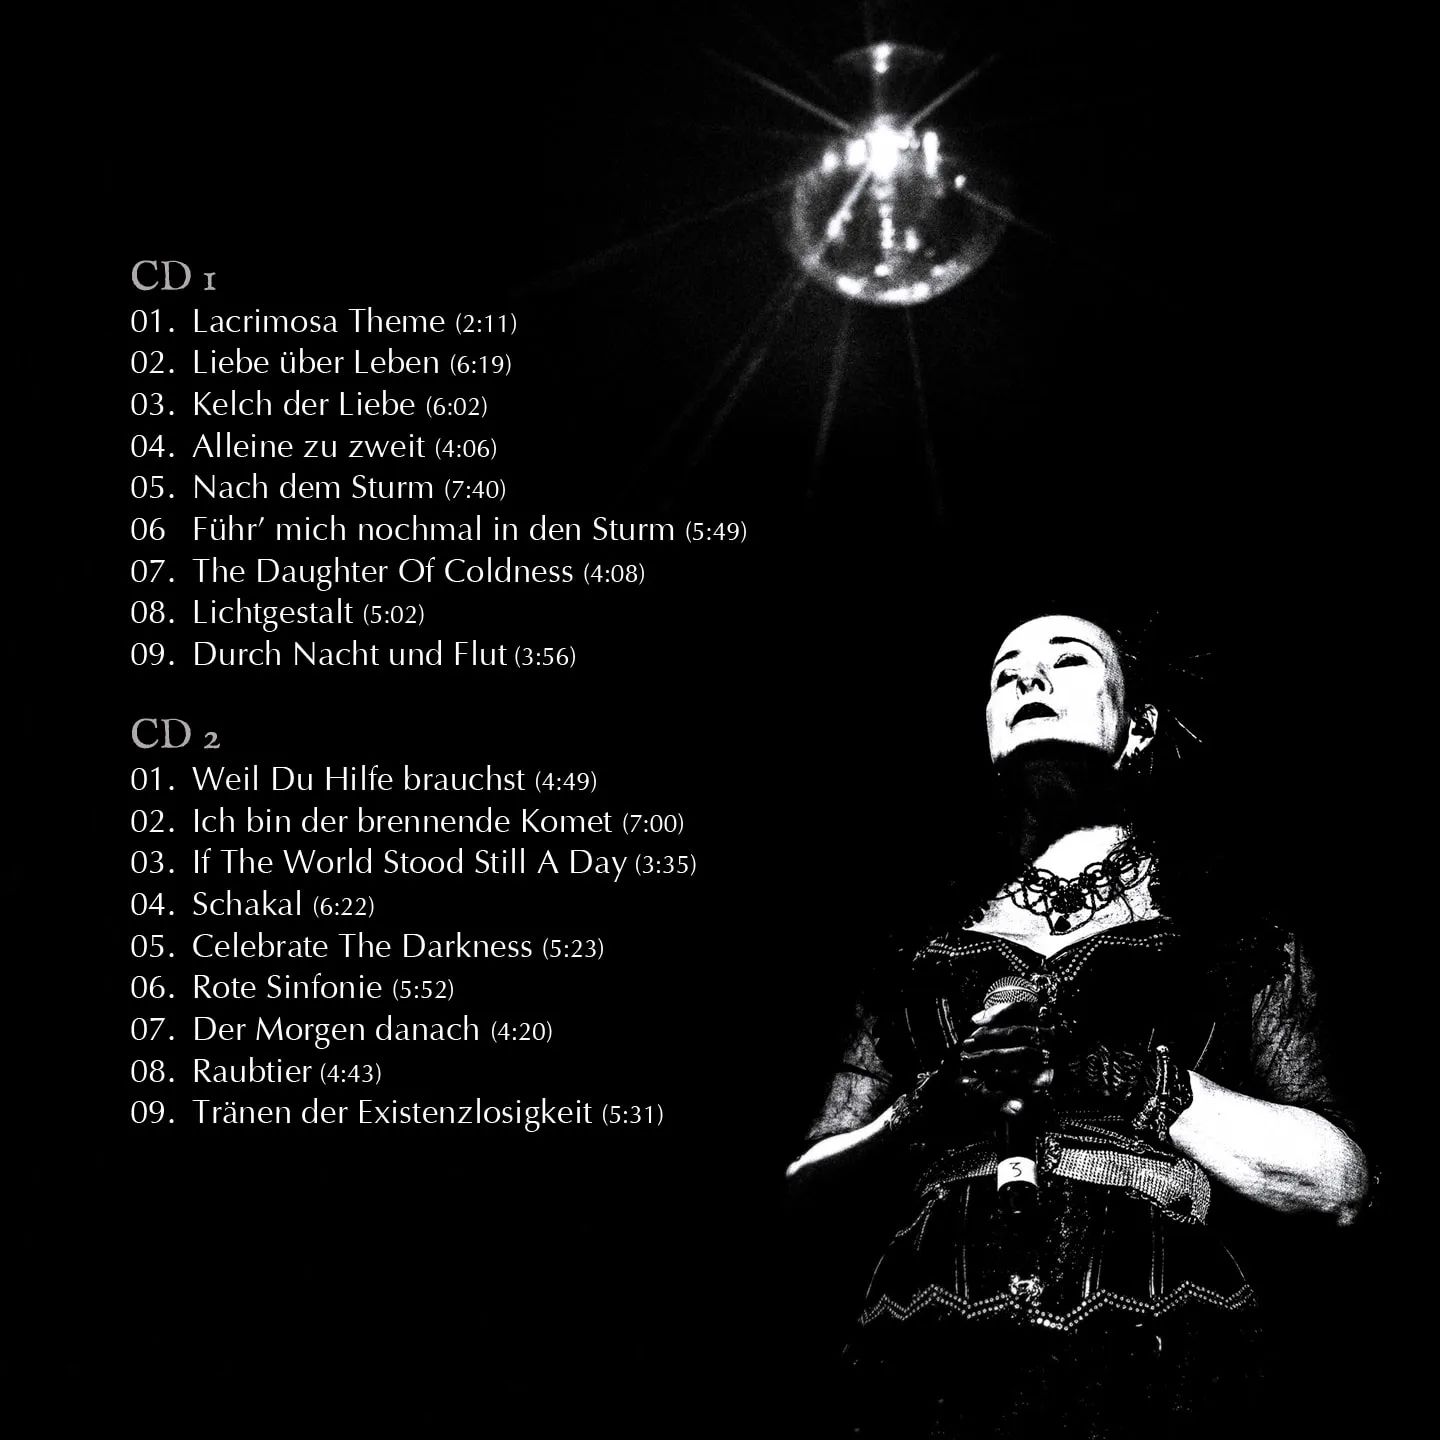 Lacrimosa anuncia "Nachts", Aquí tienes las canciones y joyas para los fanáticos (actualizado)